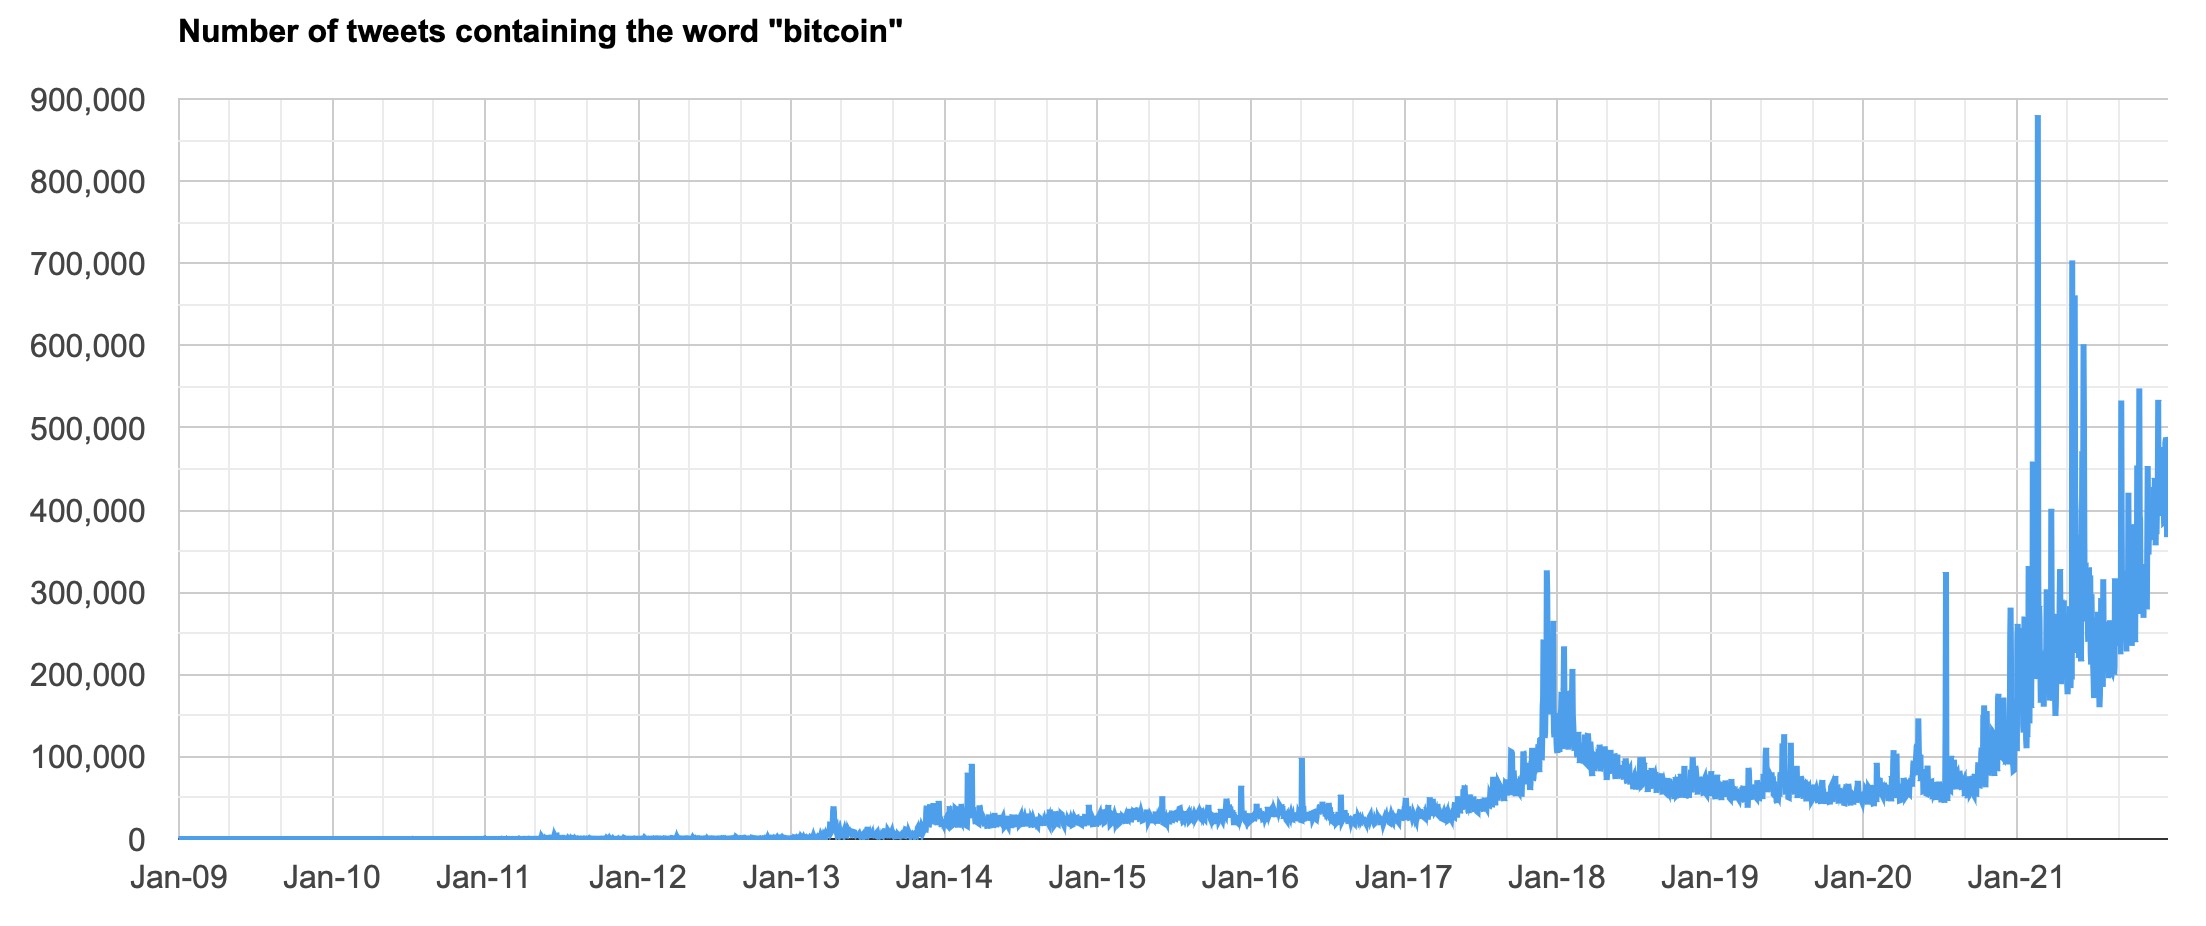 Đã có hơn 100 triệu tweet đề cập đến Bitcoin trong năm 2021